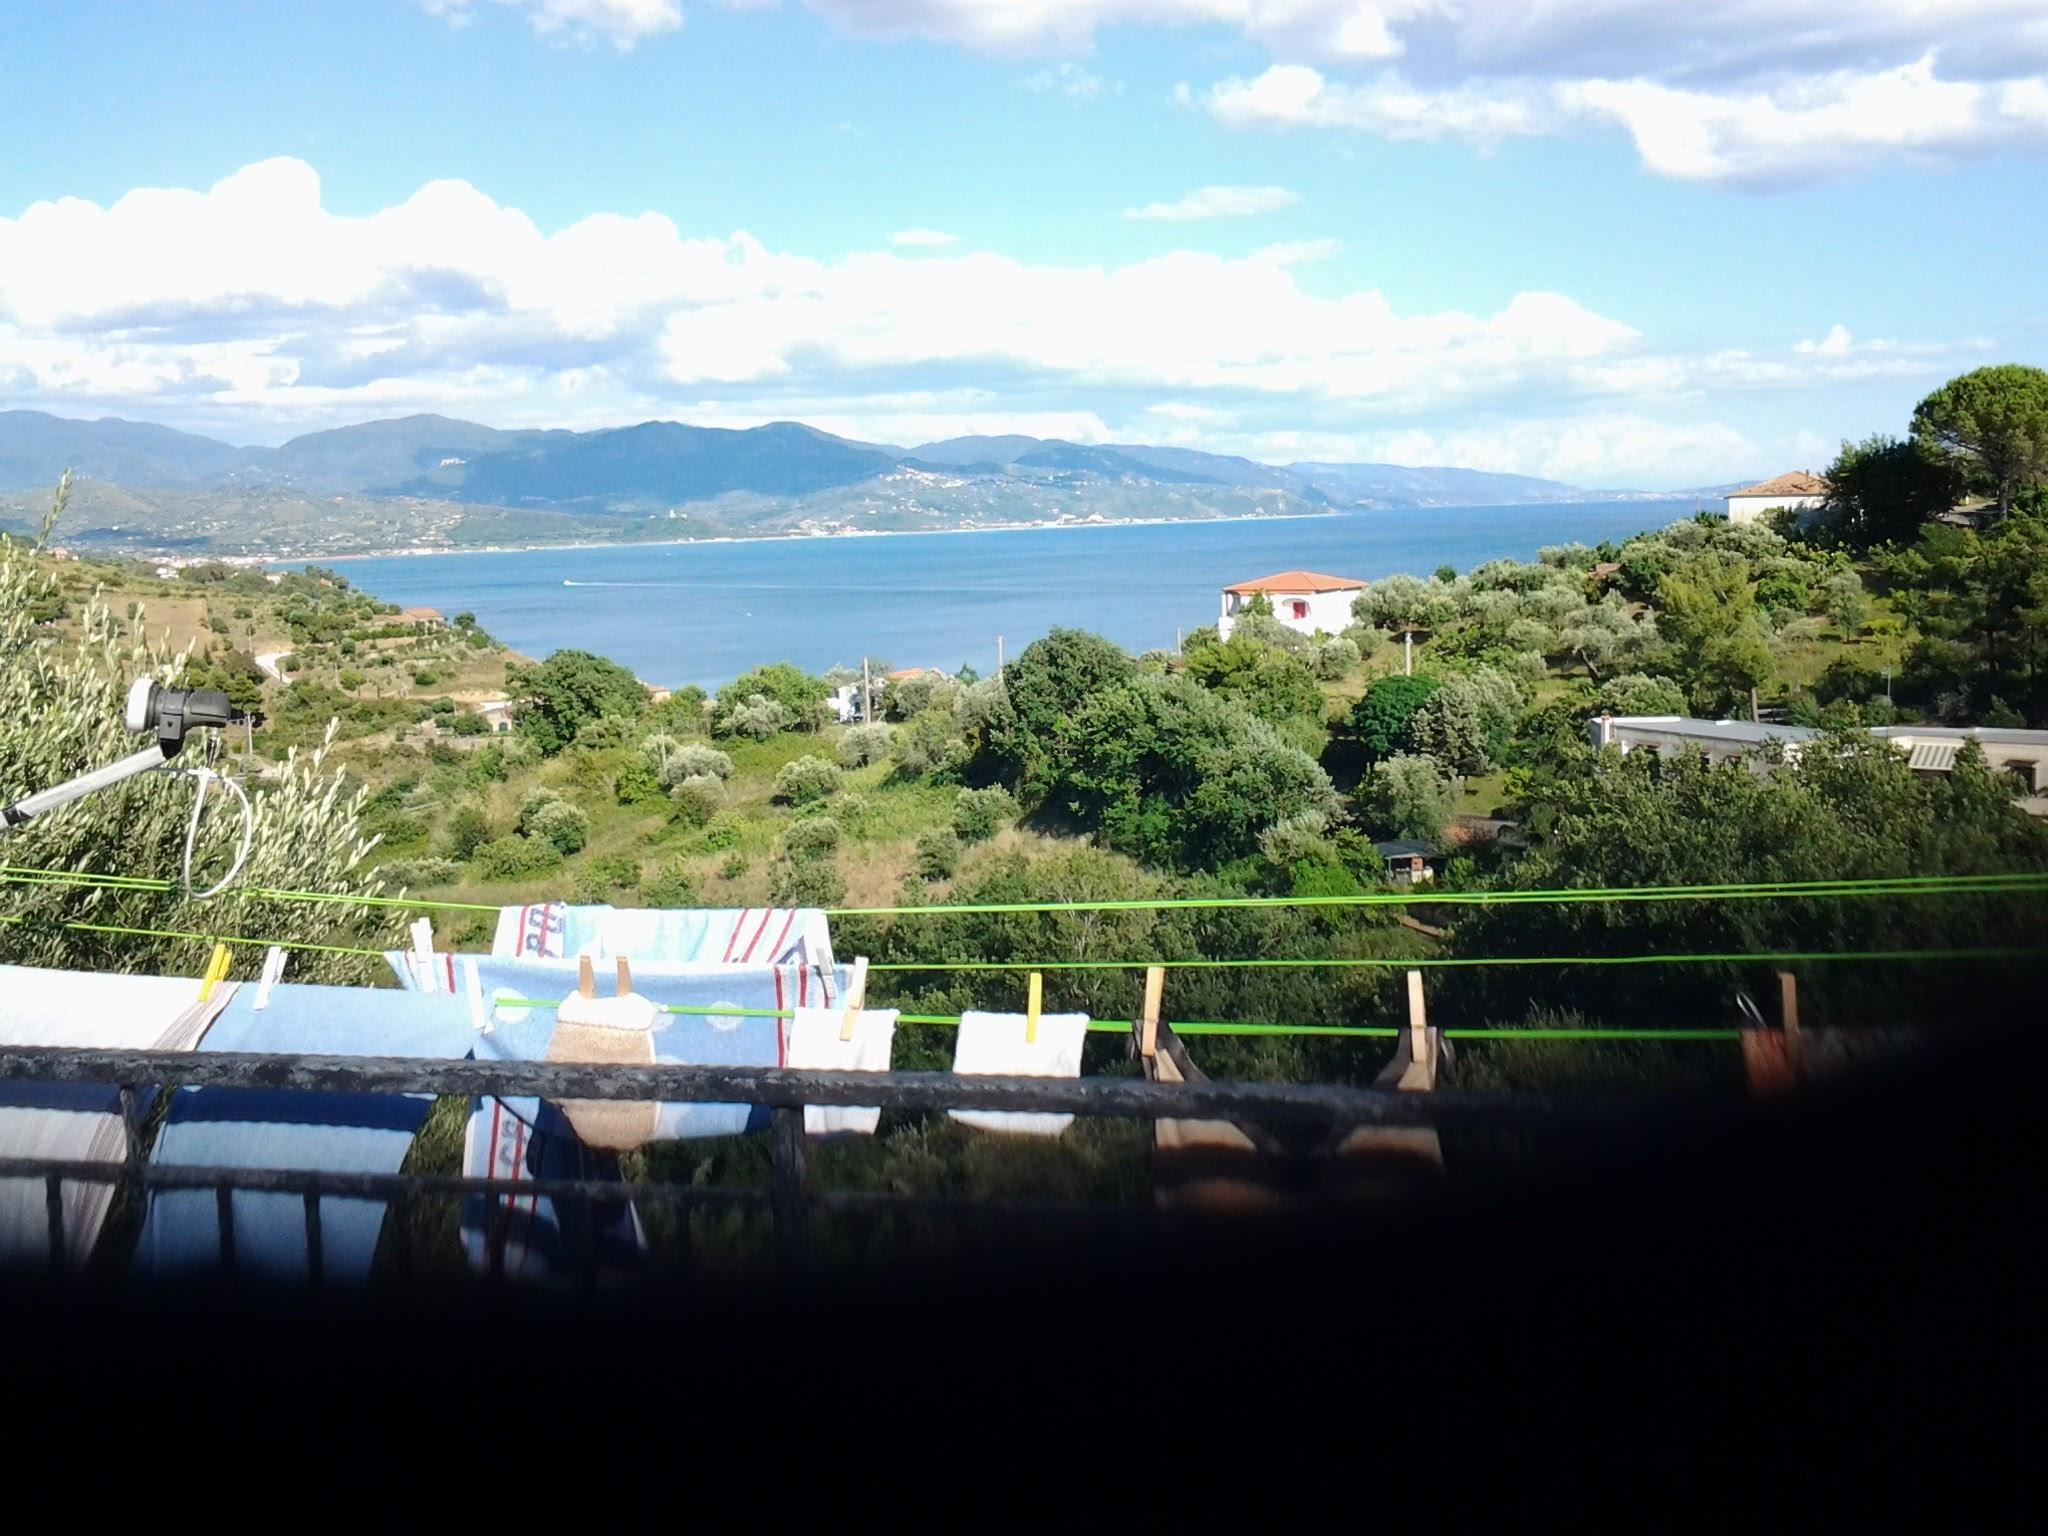 #wellness #beautychallenge Entspannen auf dem Balkon, Blick aufs Meer. Danach kann ich mich wieder der Wäsche widmen. 